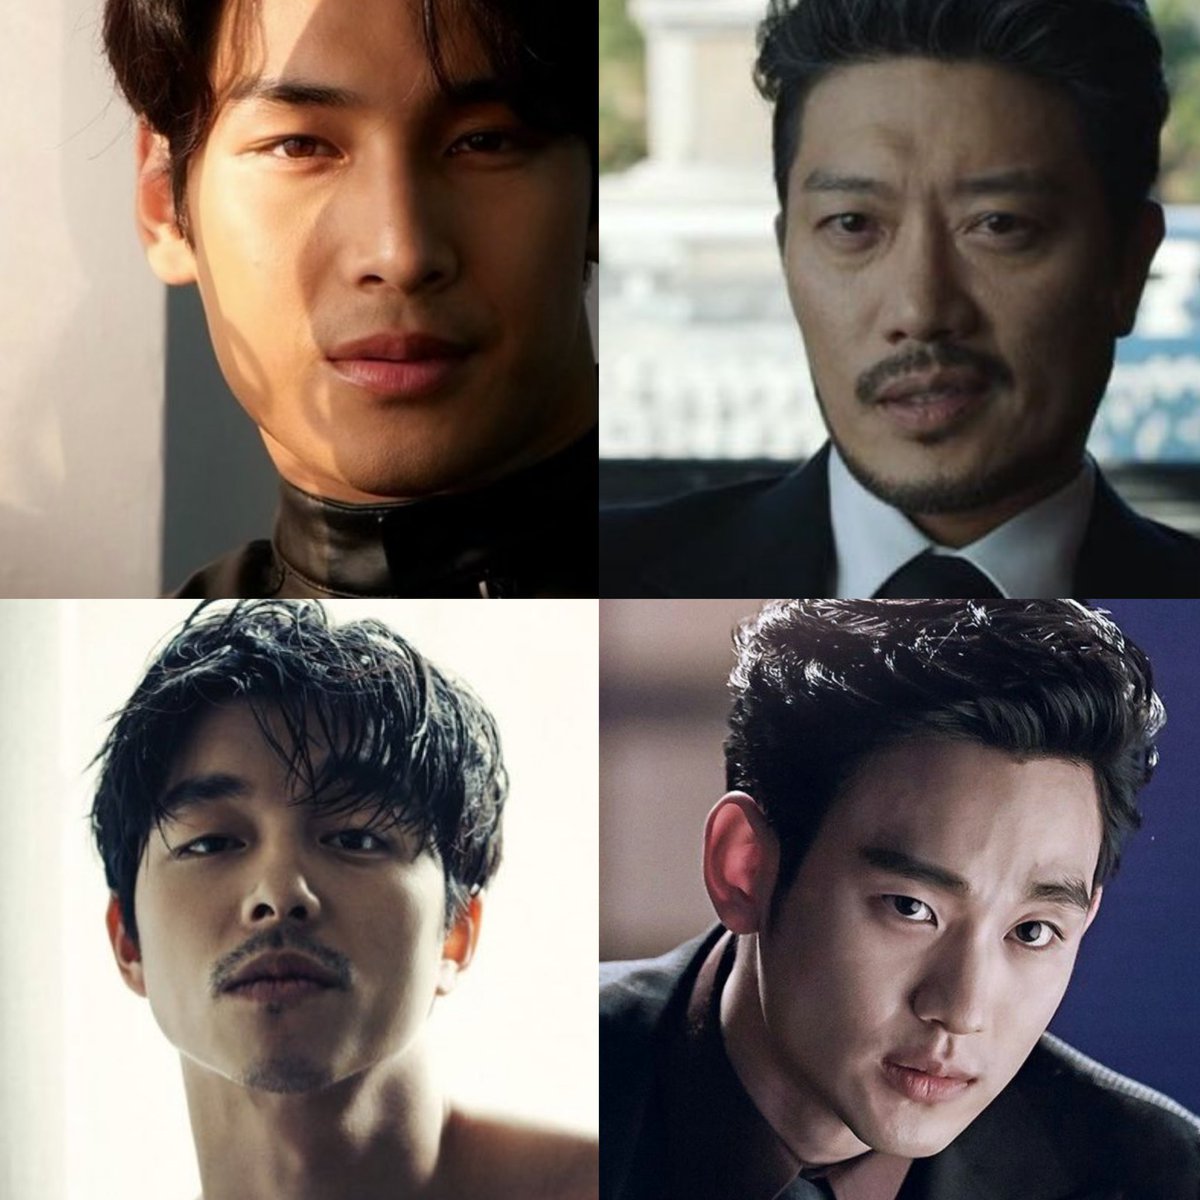 Şu dörtlünün bir dizide oynadığını düşünsenize 😍 

#ApoNattawin 
#ParkHeeSoon
#KimSooHyun 
#GongYoo